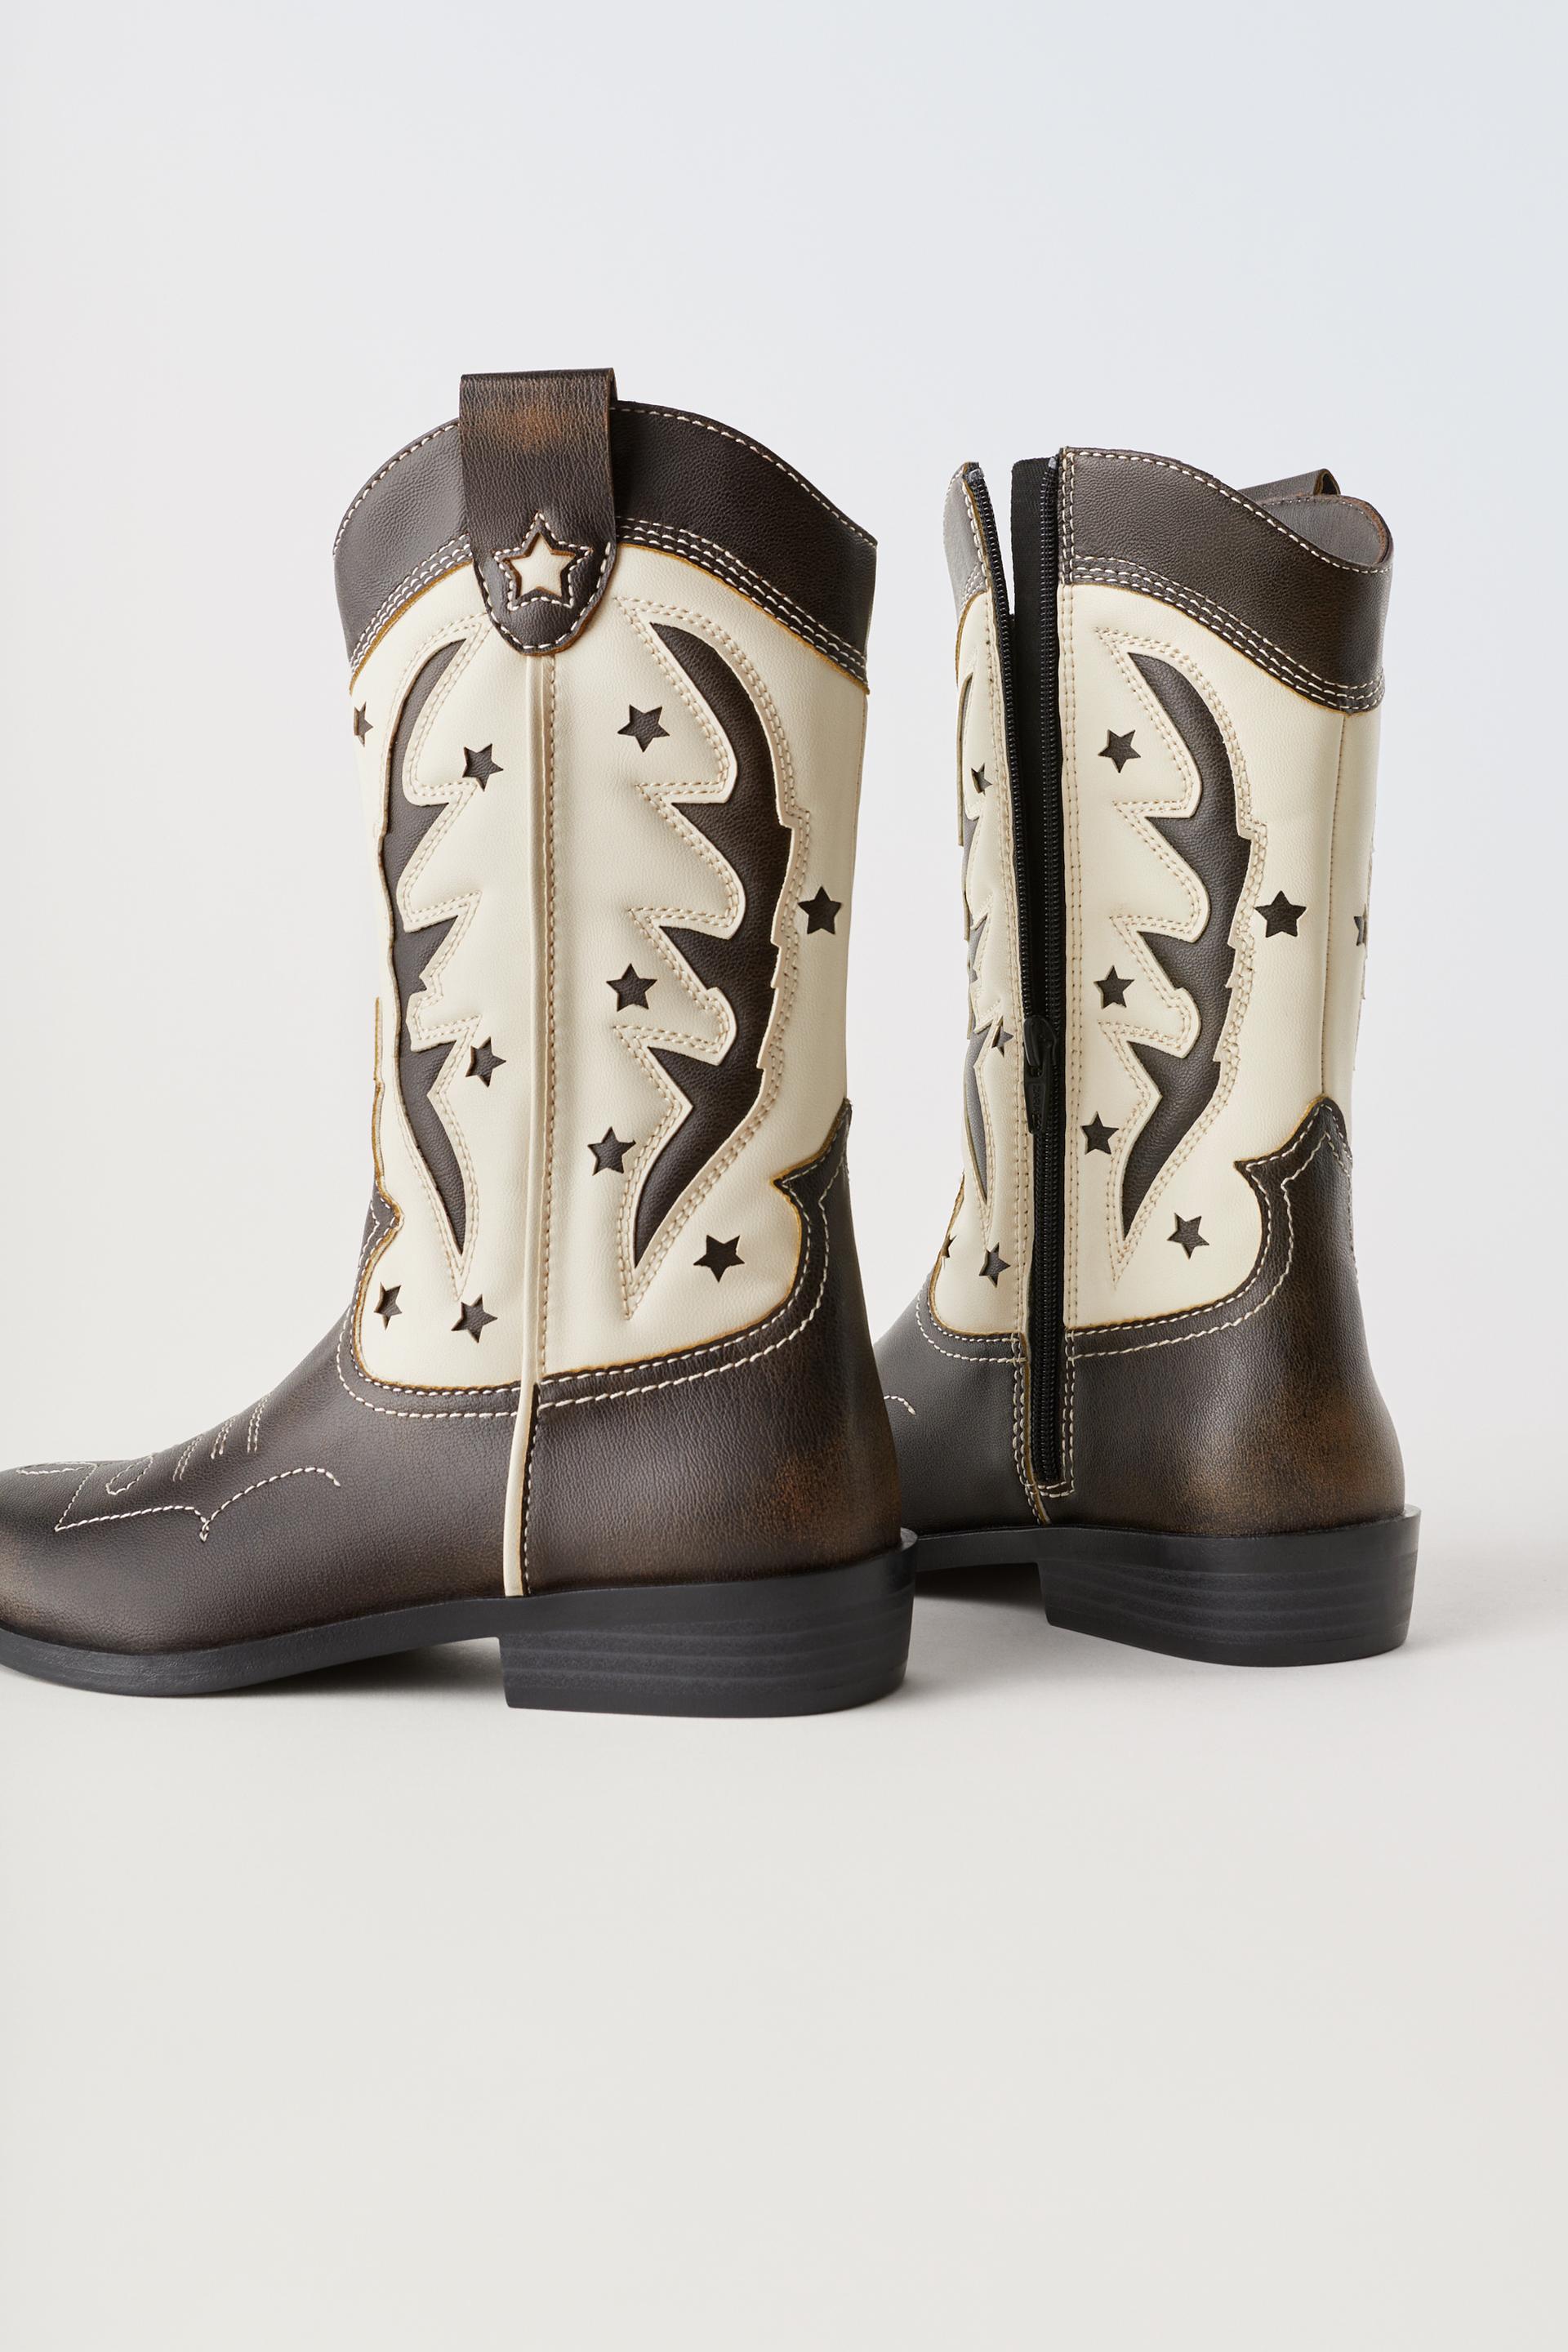 Botas cowboy: una guía de estilo para llevar las botas de la primavera  según Zara